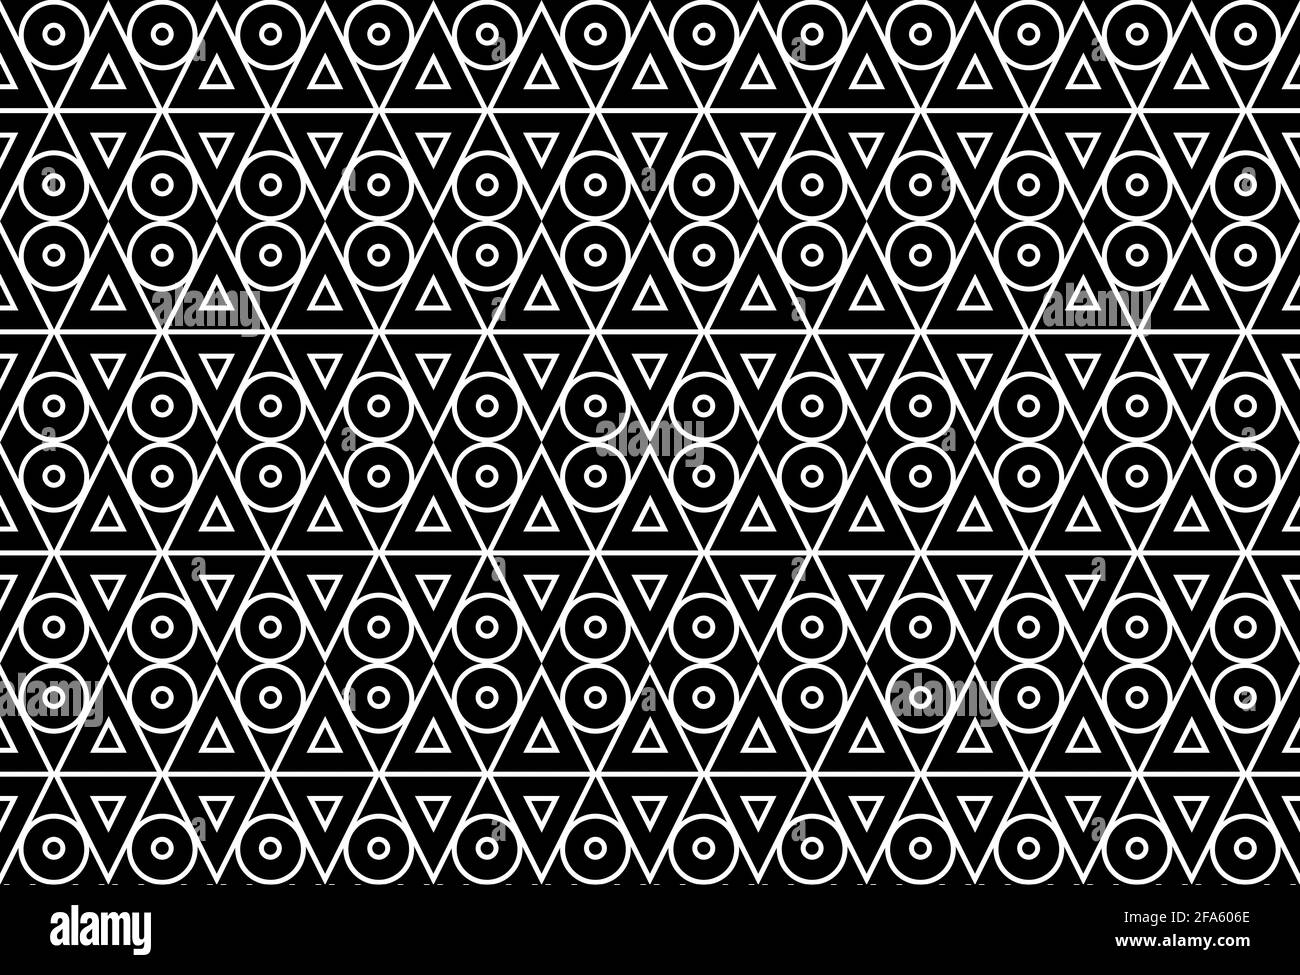 L'illustration sans couture des formes géométriques comprend deux triangles et cercles empilés avec des bordures blanches et un arrière-plan noir. Banque D'Images